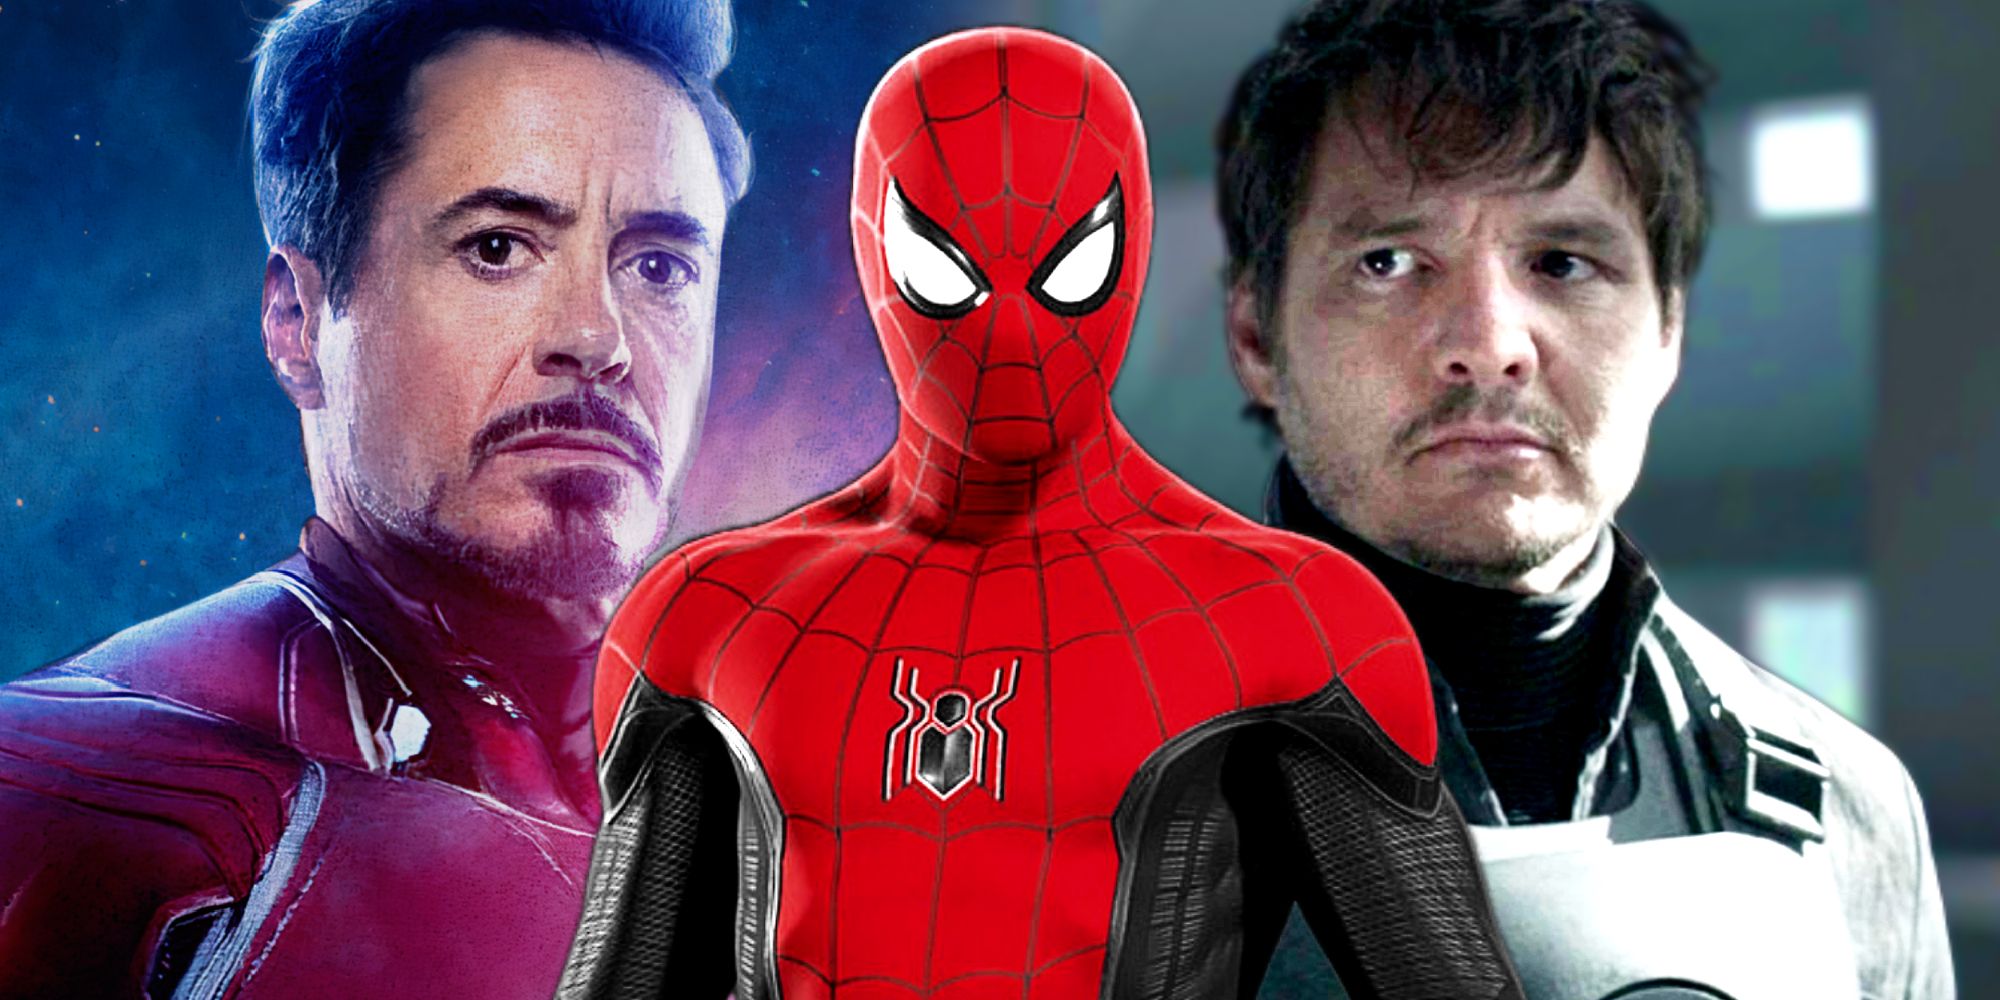 O Homem-Aranha de Tom Holland com o Homem de Ferro de Robert Downey Jr e o Senhor Fantástico de Pedro Pascal